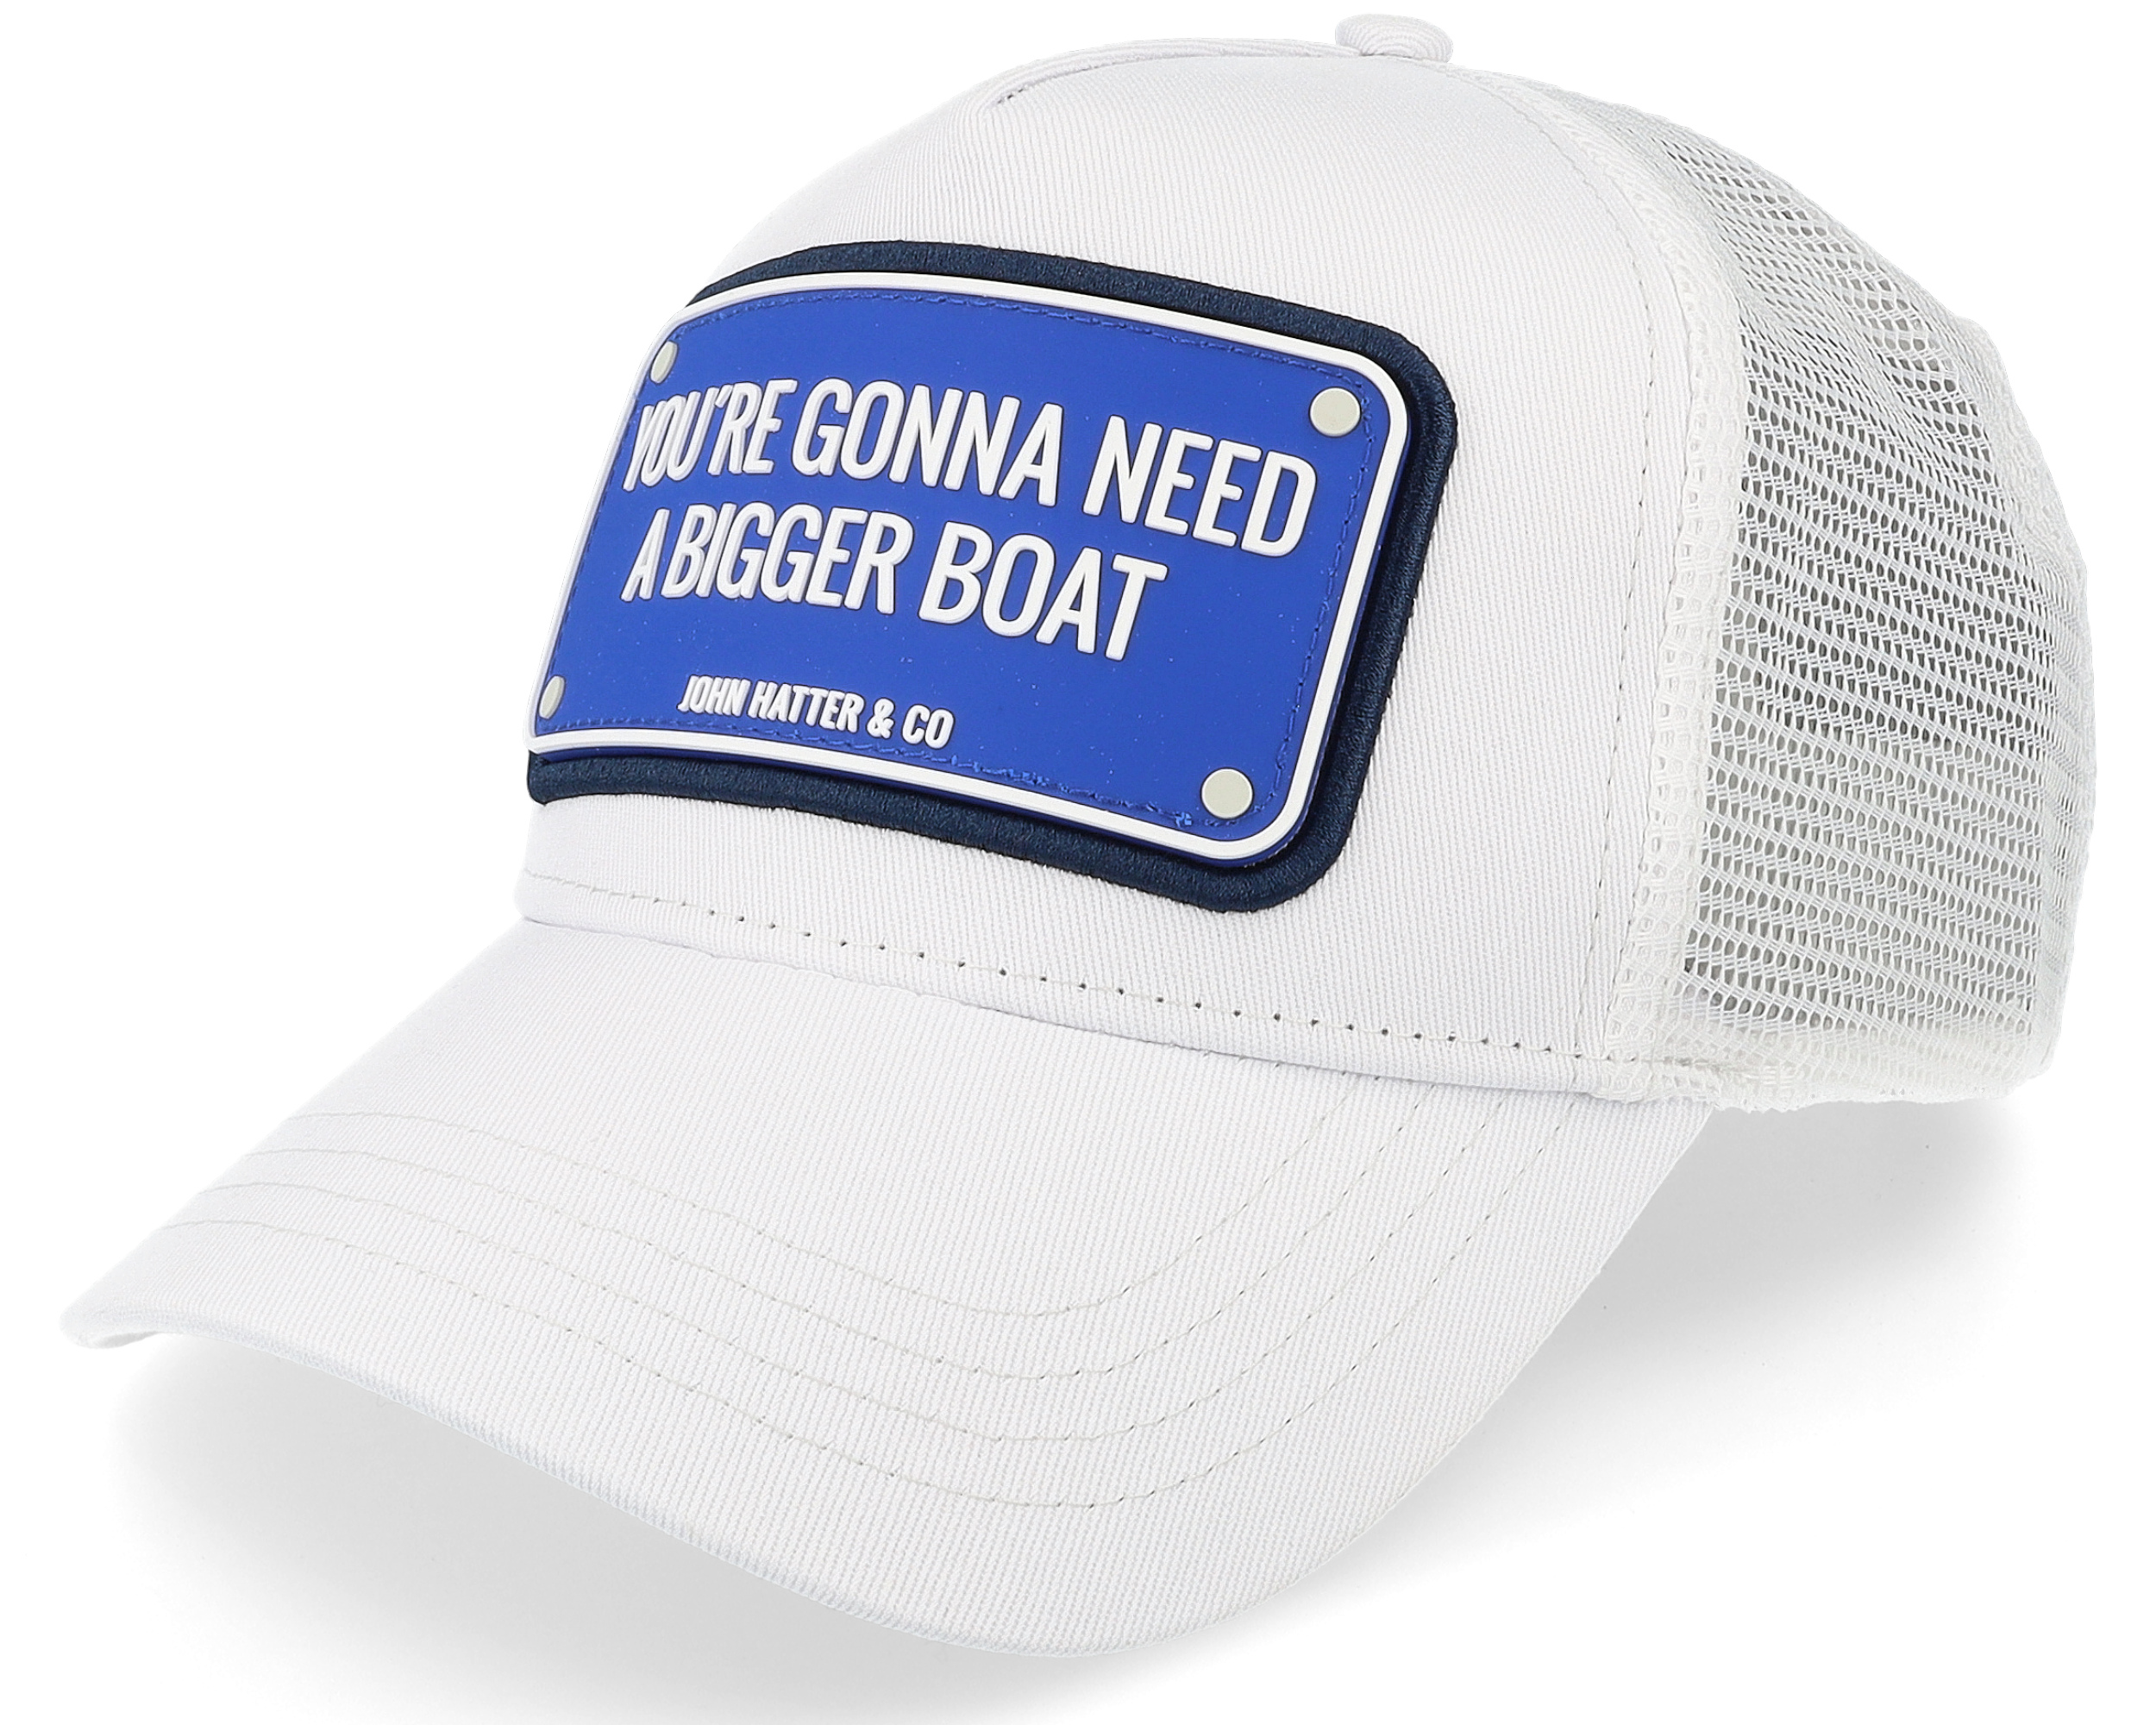 Bigger Boat White Trucker - John Hatter & Co cap